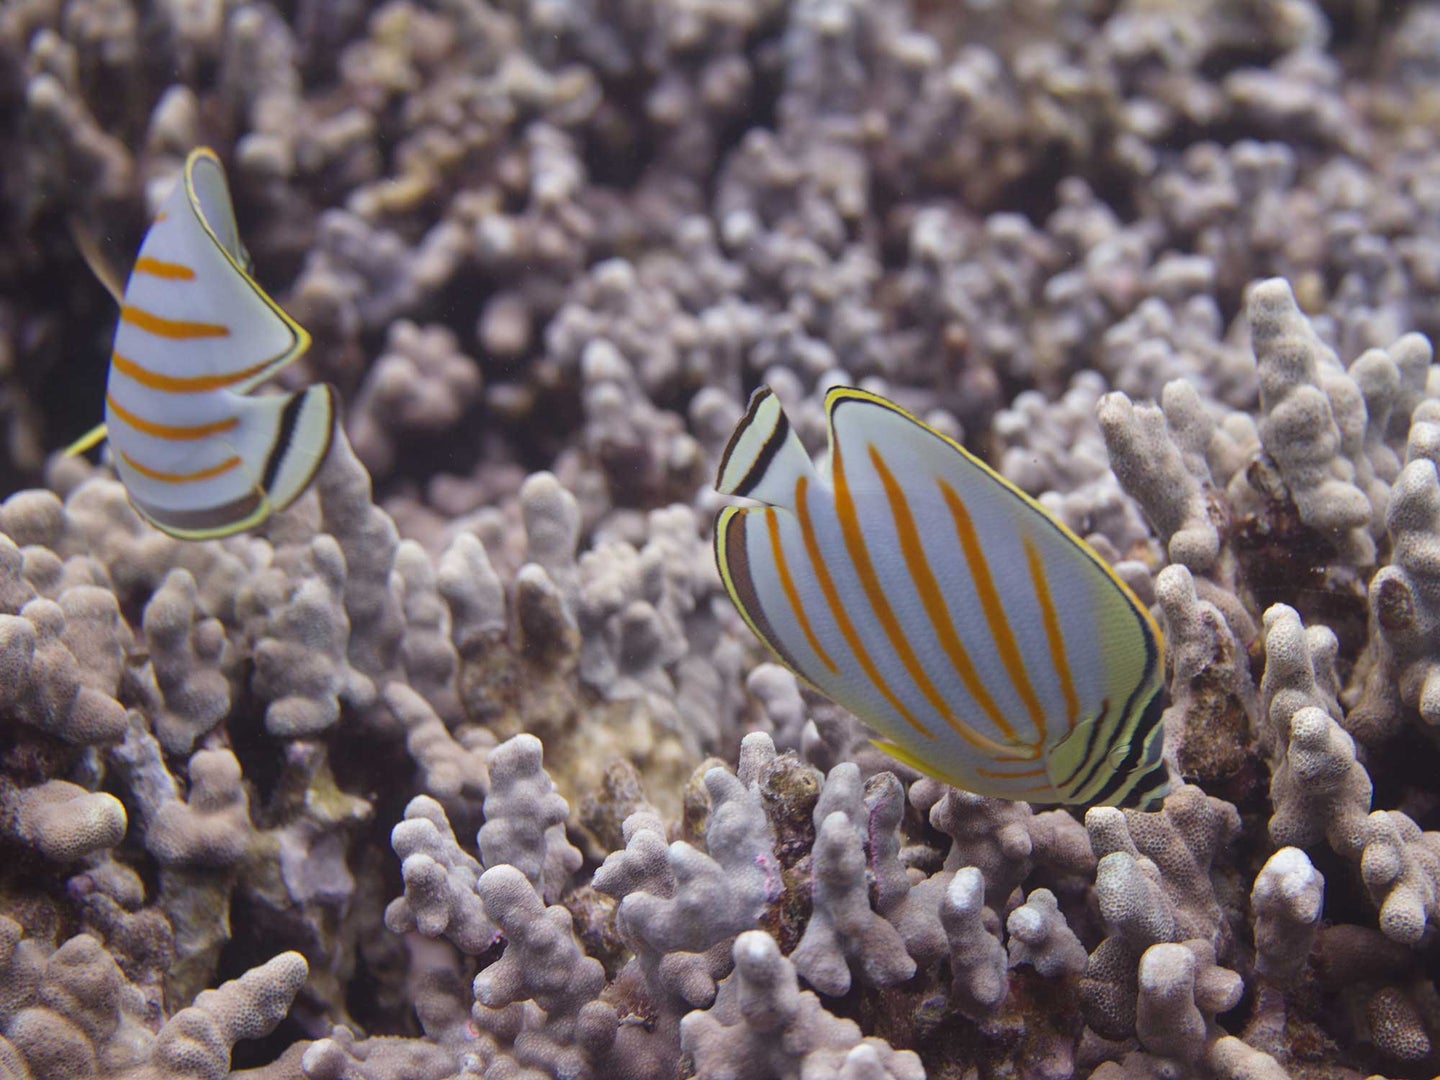 Fish poop could help coral reefs.